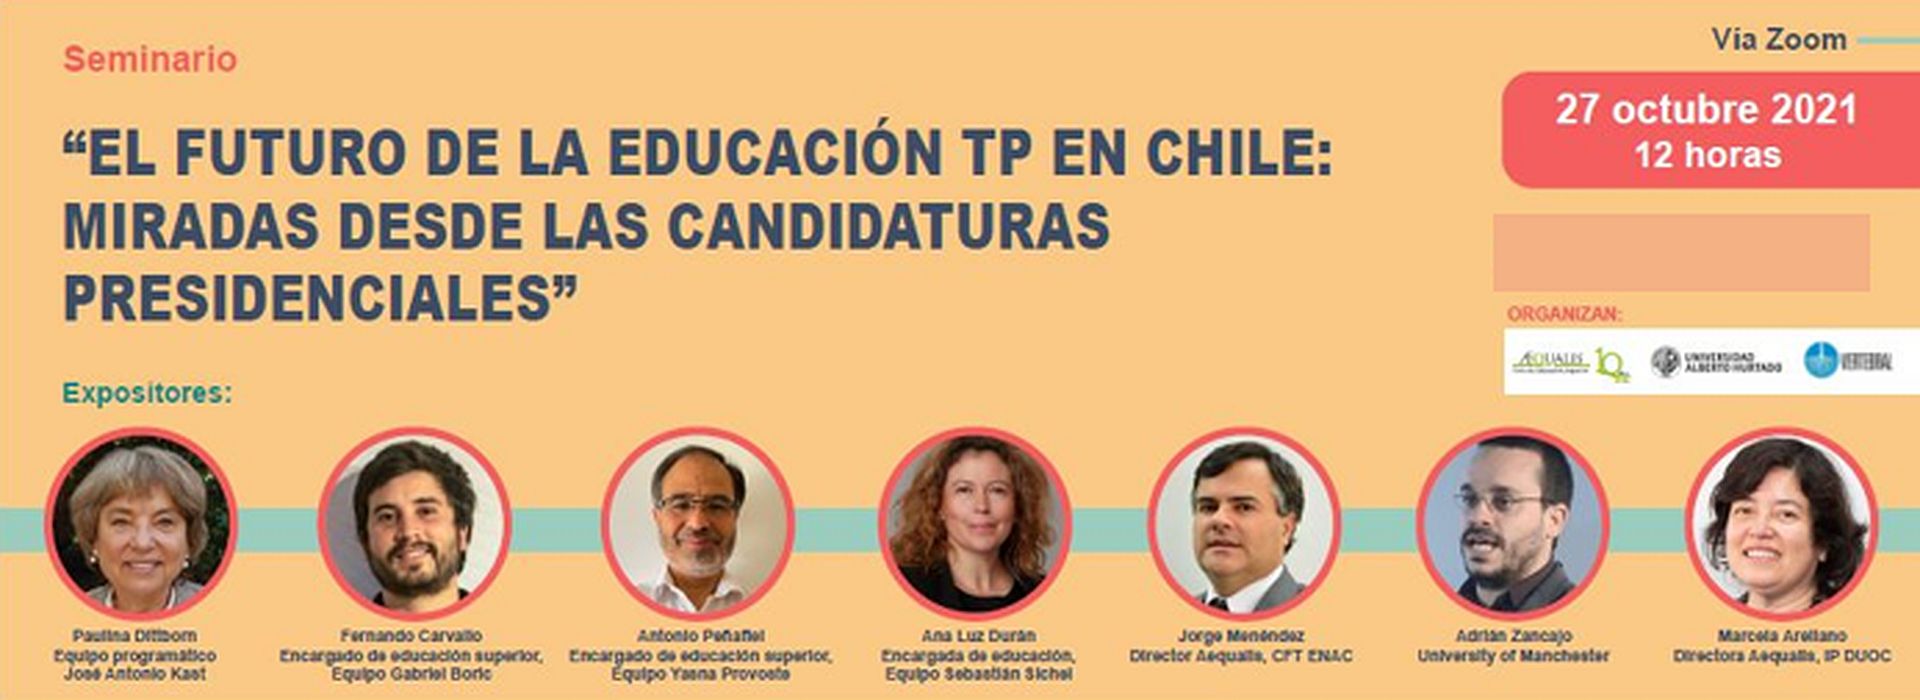 AEQUALIS invita a webinar «El futuro de la educación TP en Chile: miradas desde las candidaturas presidenciales